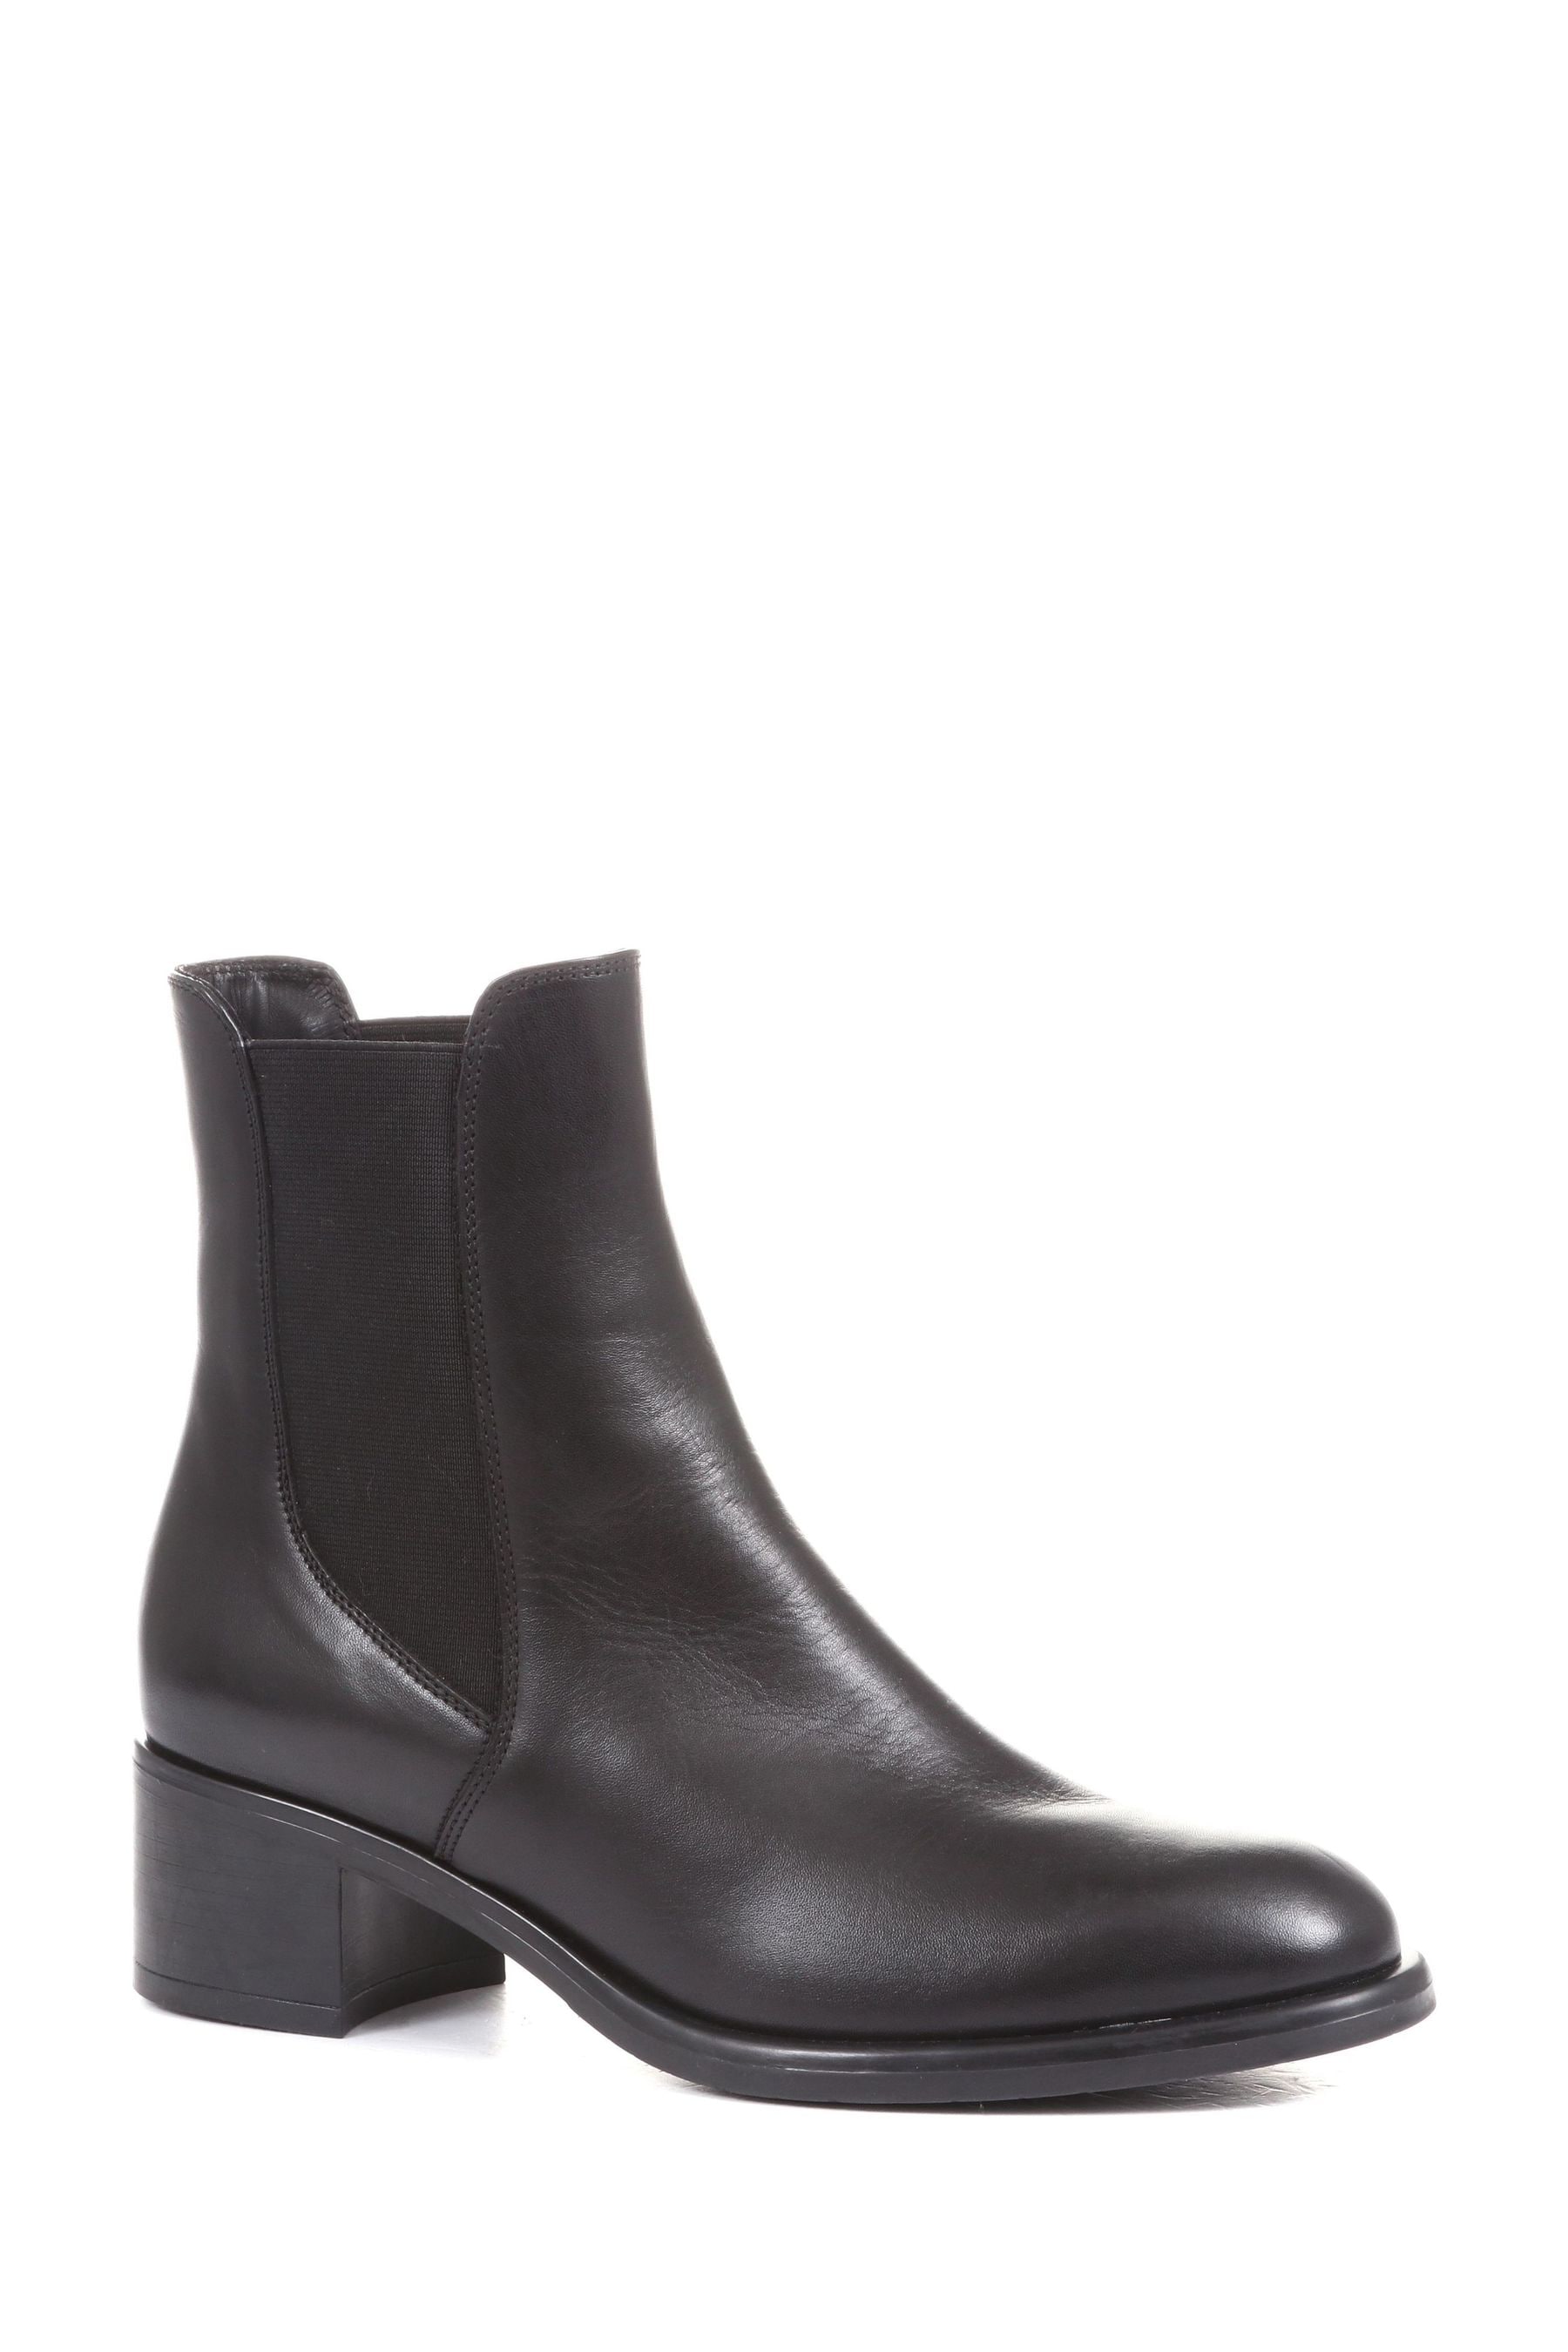 Buy Jones Bootmaker Doria Black Heeled Leather Chelsea Boots from Next ...